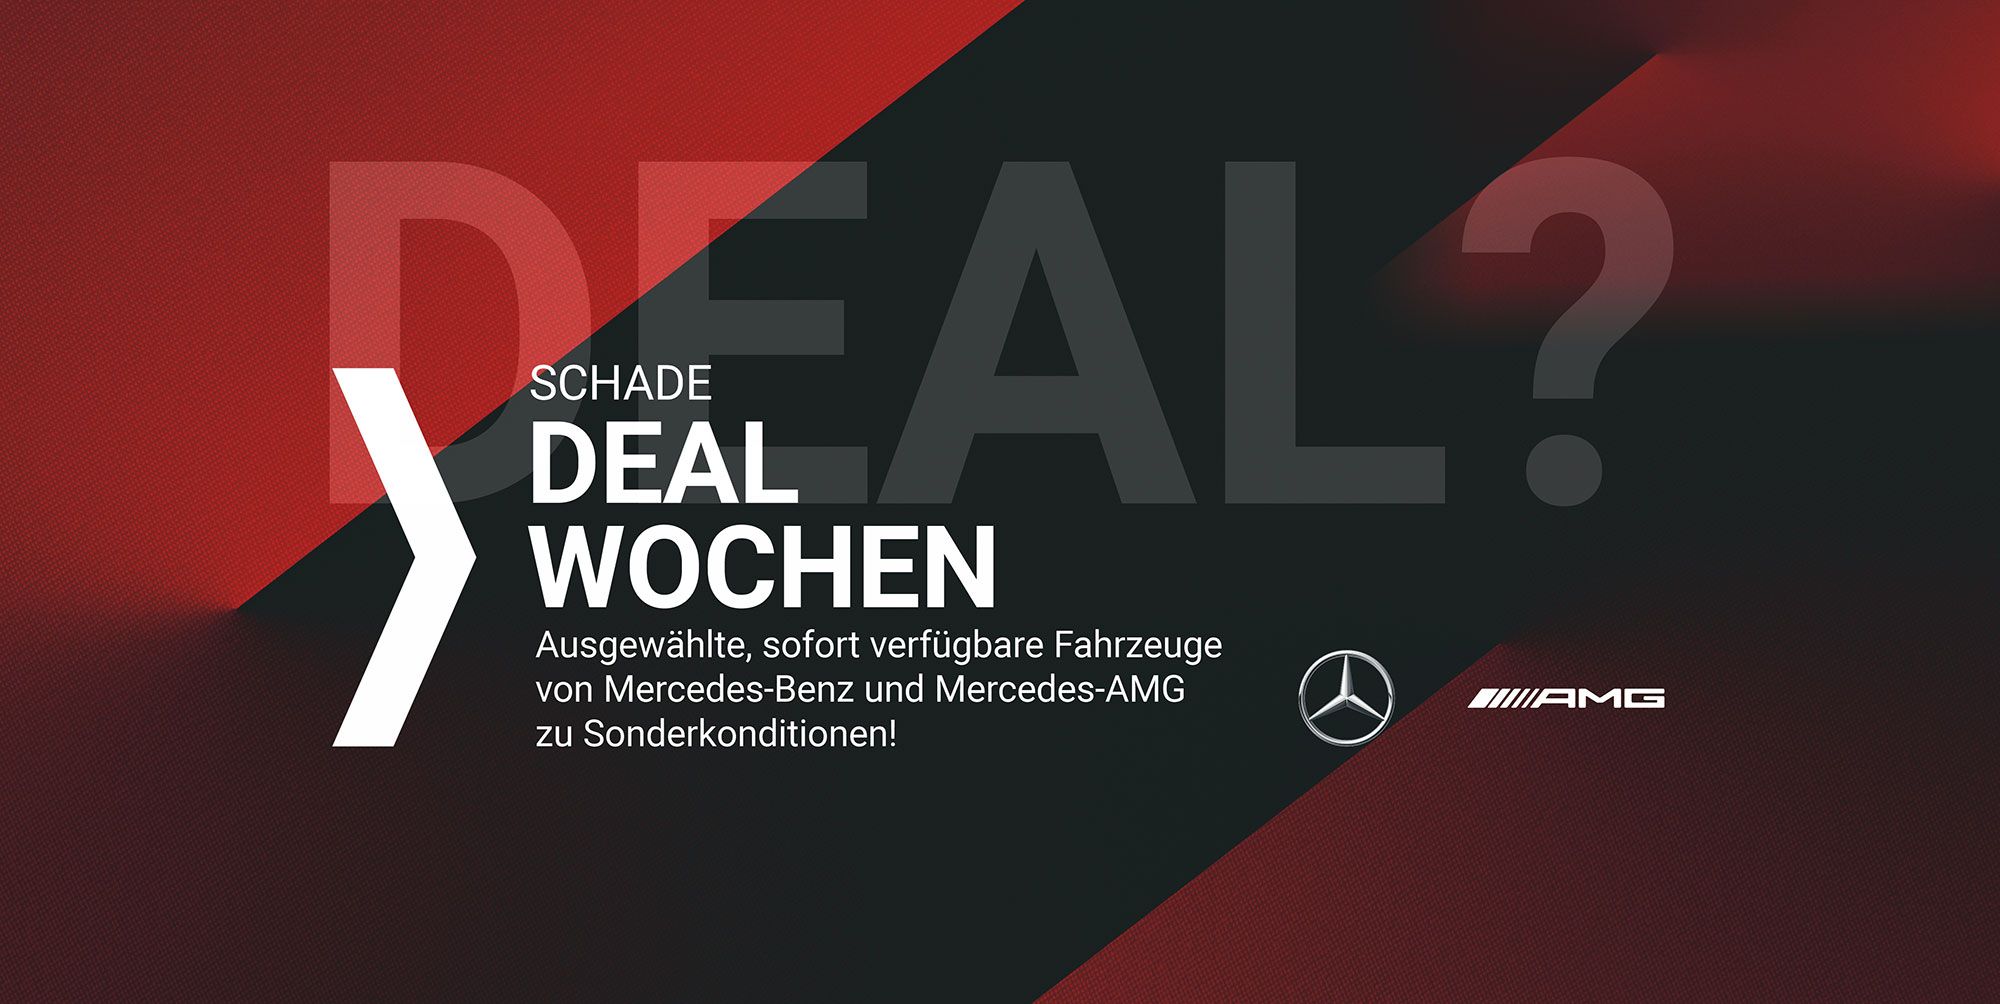 SCHADE Deal Wochen - jetzt sofort verfügbare Neuwagen zu Sonderkonditionen sichern!